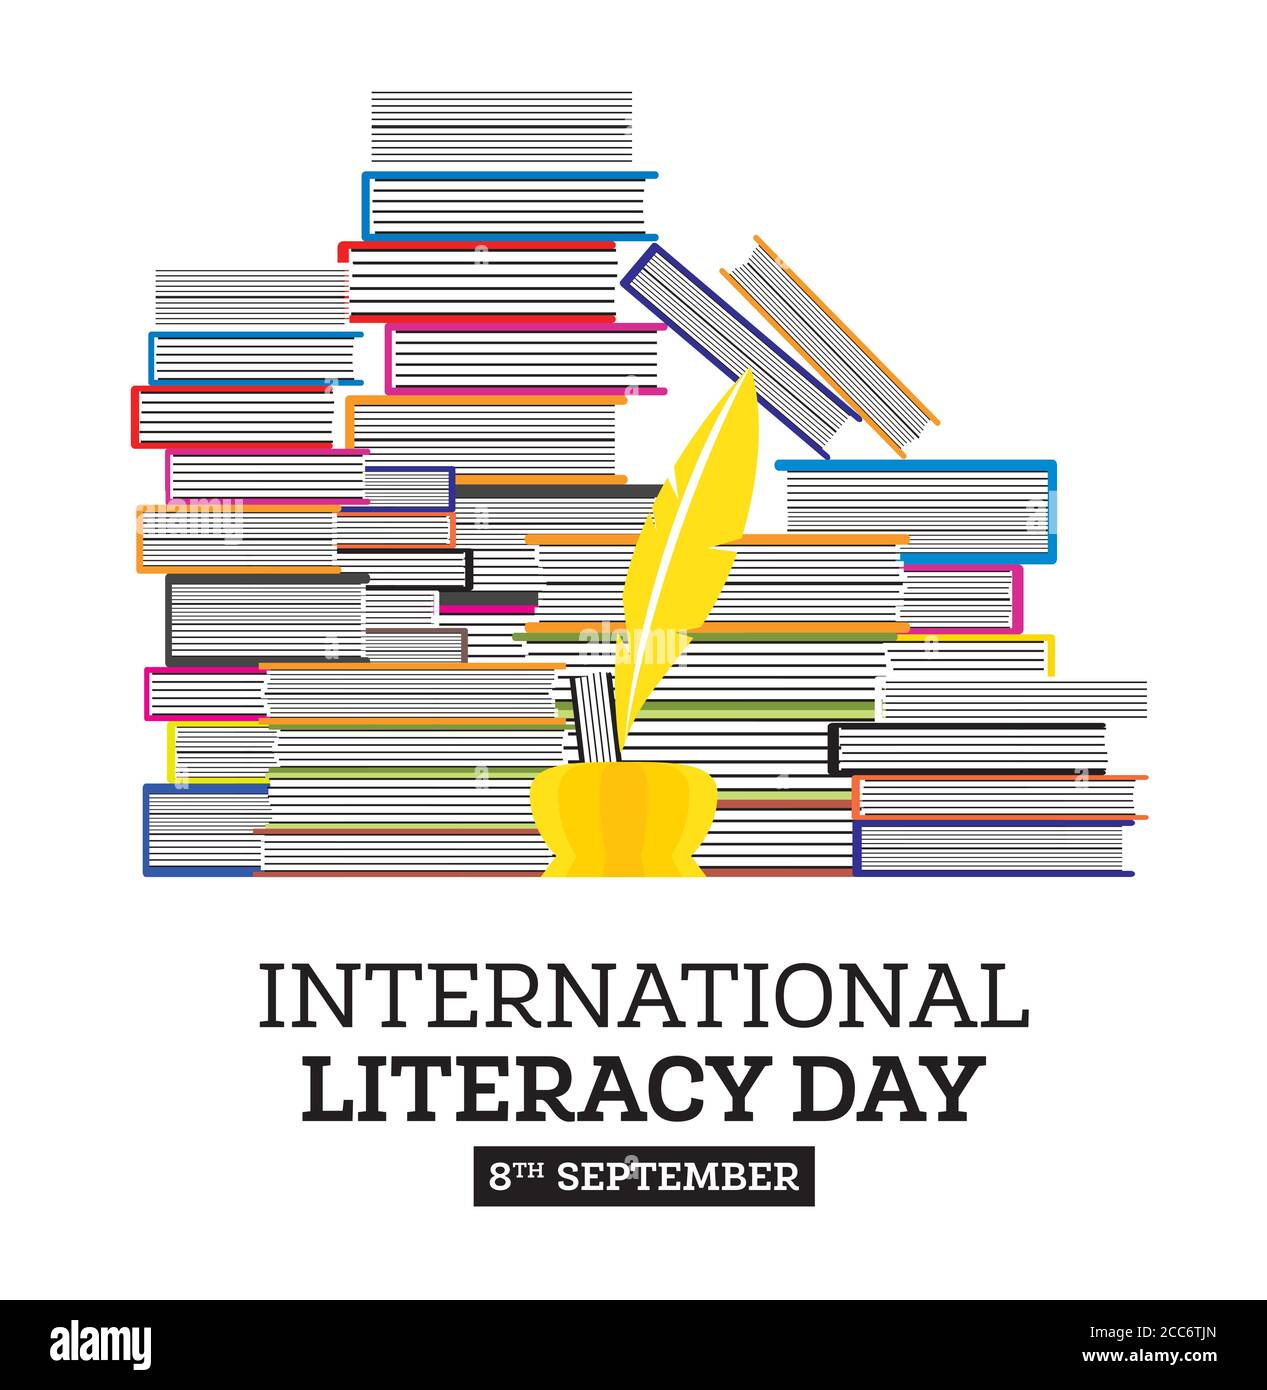 International Literacy Day Poster mit Bücherstapel und Quill Pen. Vektorgrafik. Bildungskonzept. Stock Vektor